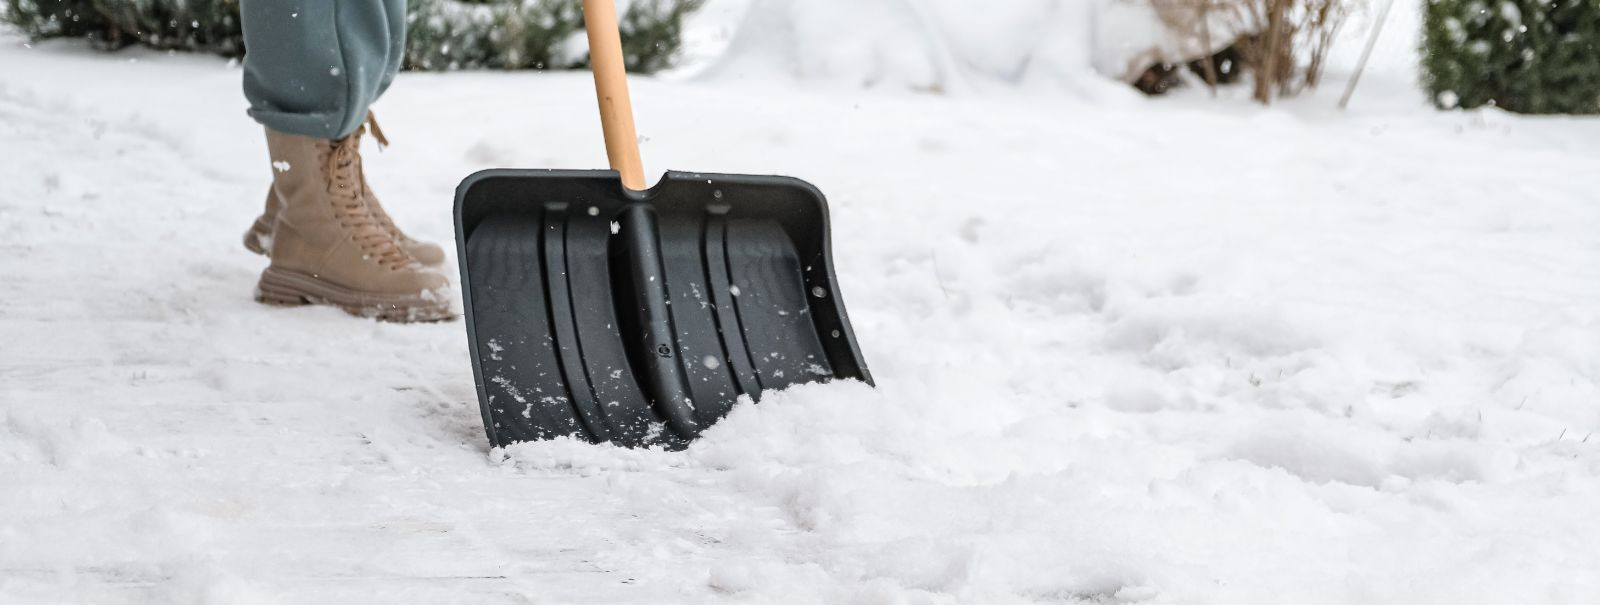 Lume eemaldamine on kriitilise tähtsusega ülesanne nii elamu- kui kaubanduskinnisvara omanikele. See tagab jalakäijate ja sõidukite ohutu liikumise, minimeerib